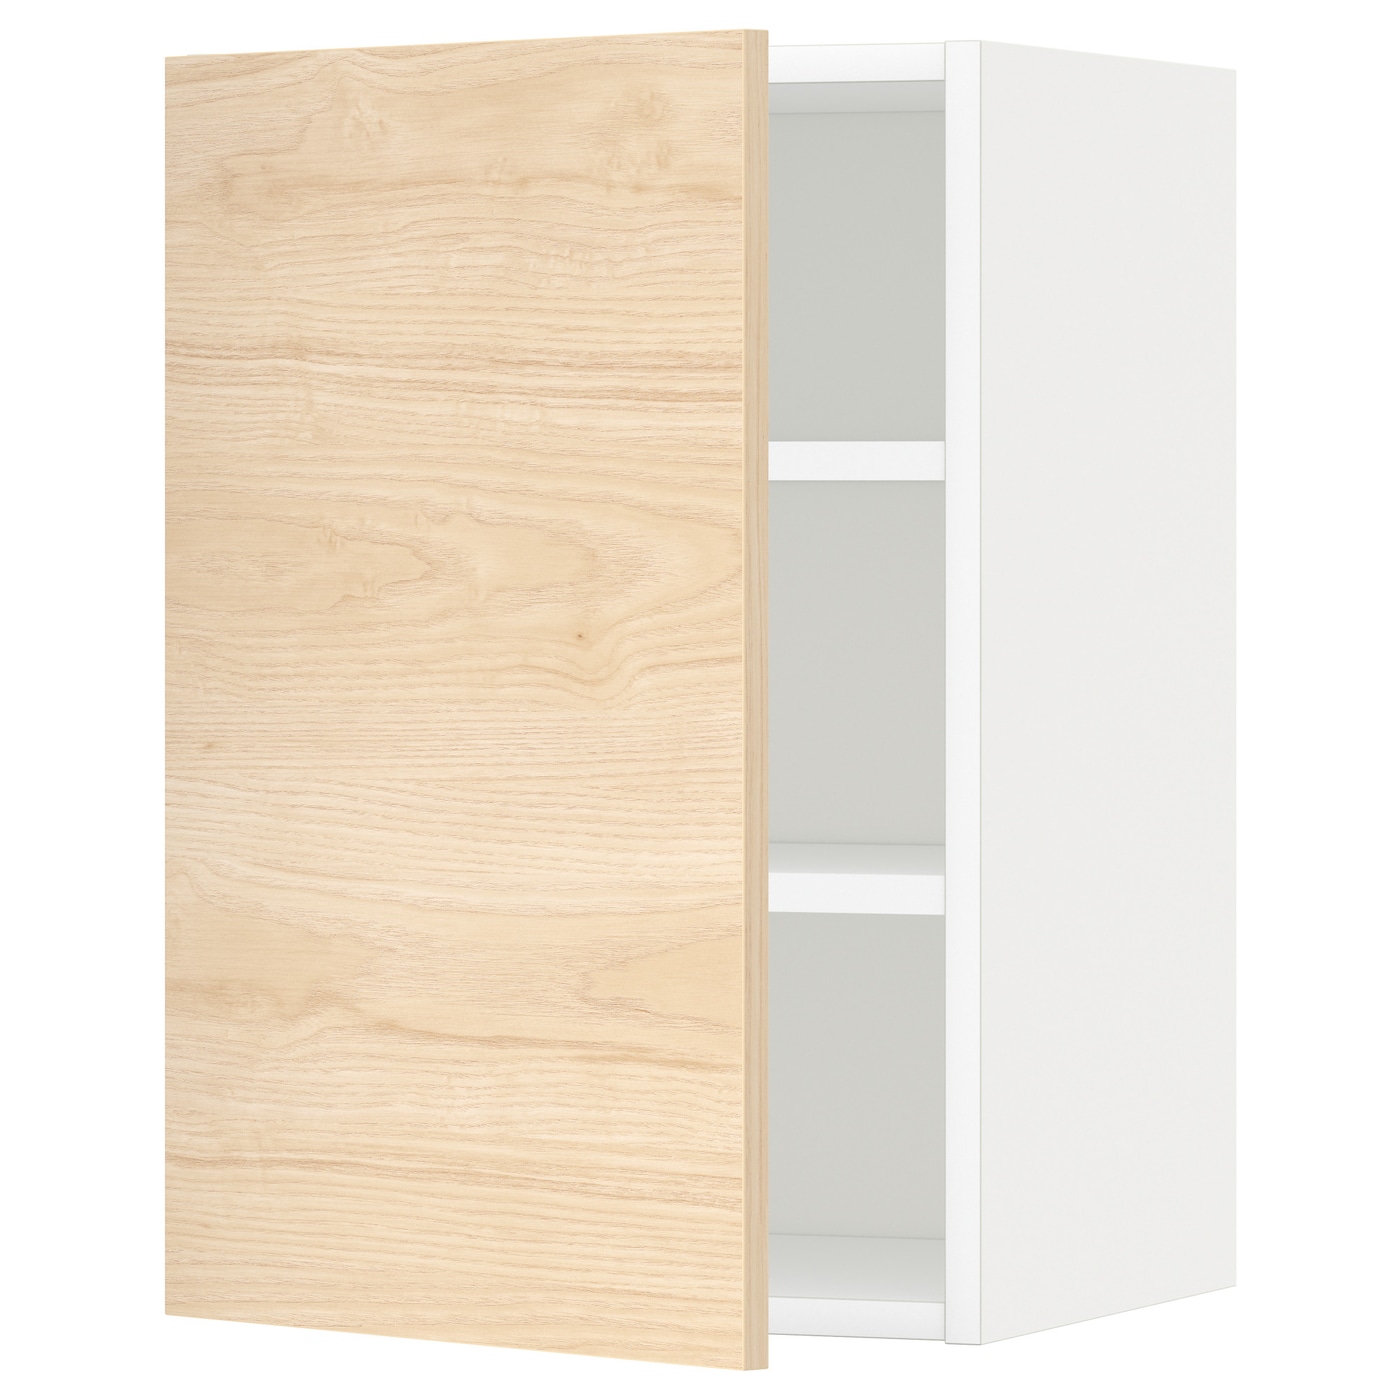 Навесной шкаф с полкой - METOD IKEA/ МЕТОД ИКЕА, 60х40 см, белый/под беленый дуб